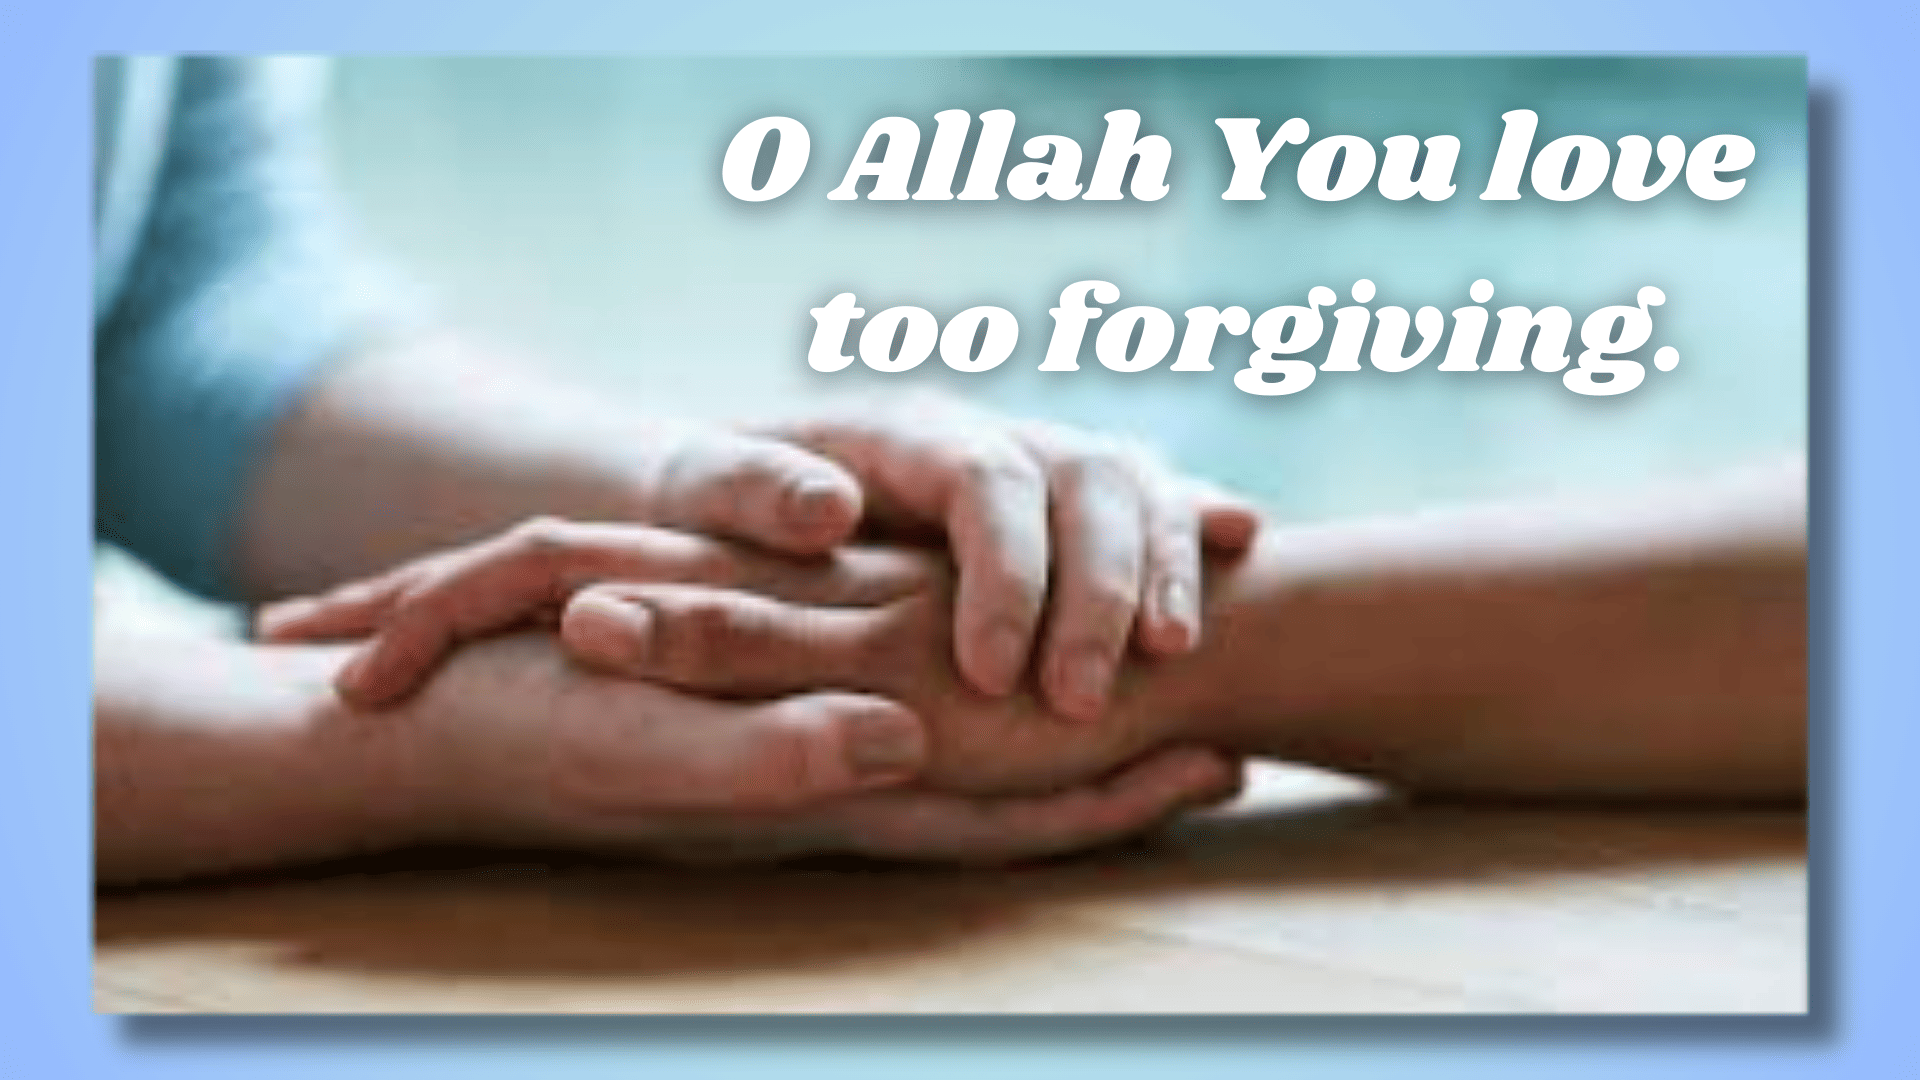 O Allah You love too forgiving.